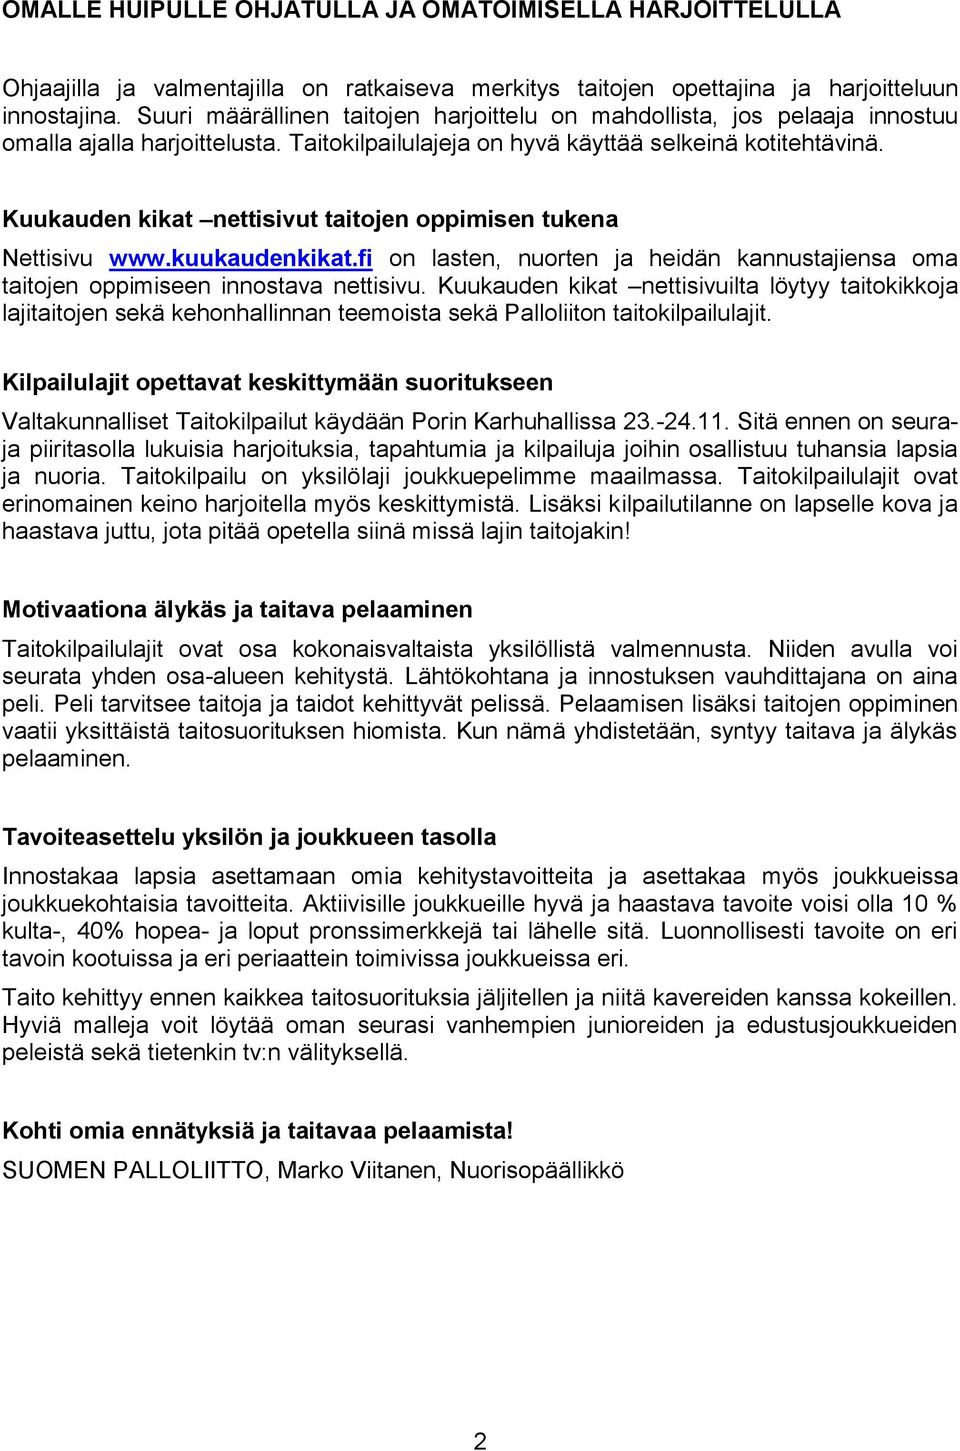 Kuukauden kikat nettisivut taitojen oppimisen tukena Nettisivu www.kuukaudenkikat.fi on lasten, nuorten ja heidän kannustajiensa oma taitojen oppimiseen innostava nettisivu.